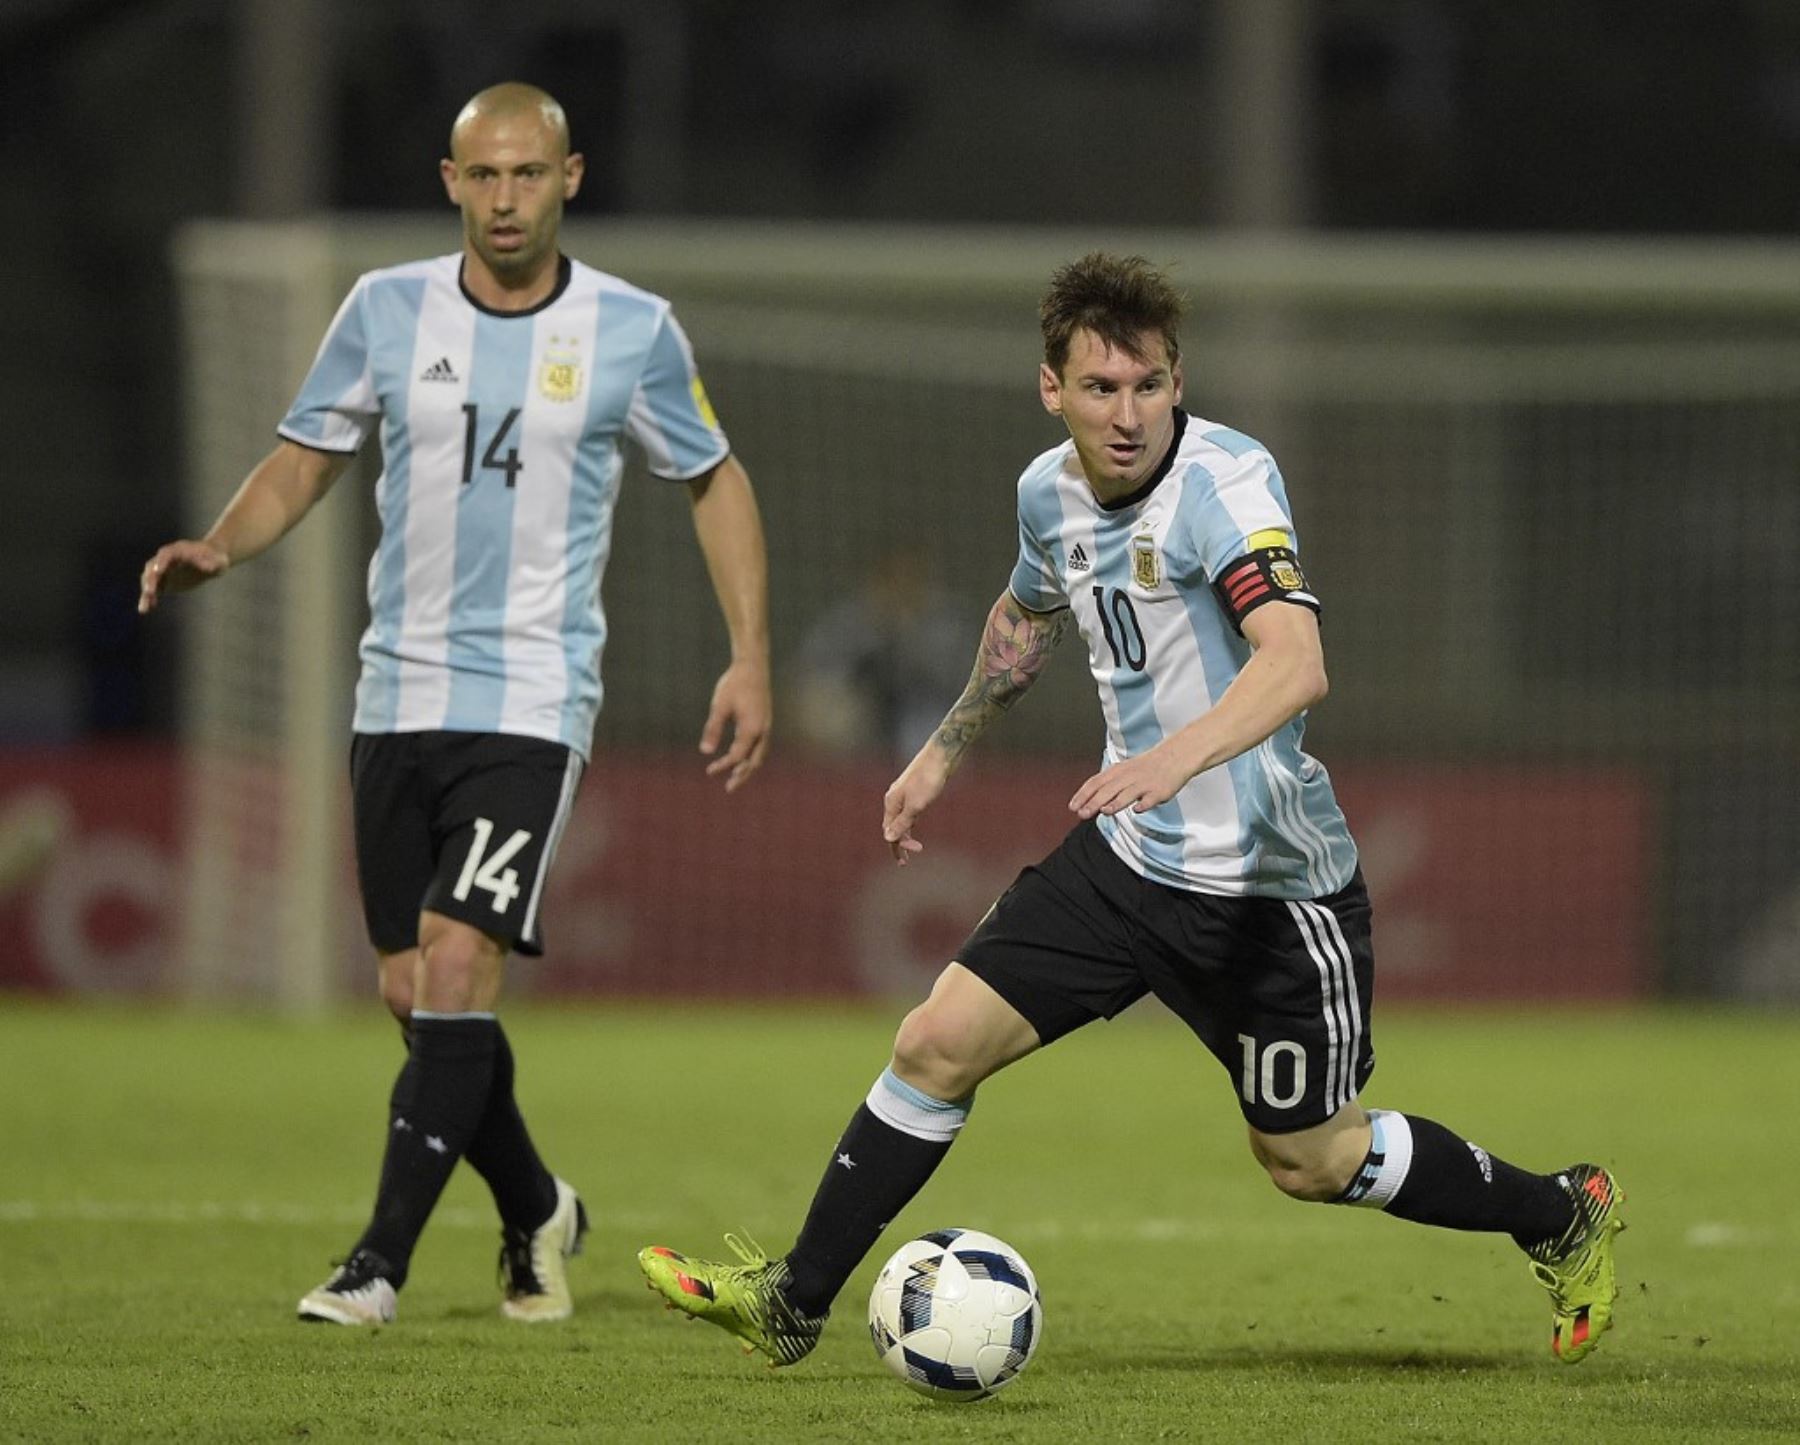 Messi sigue imponiendo récords. Ahora superó a su amigo Mascherano en la selección argentina.